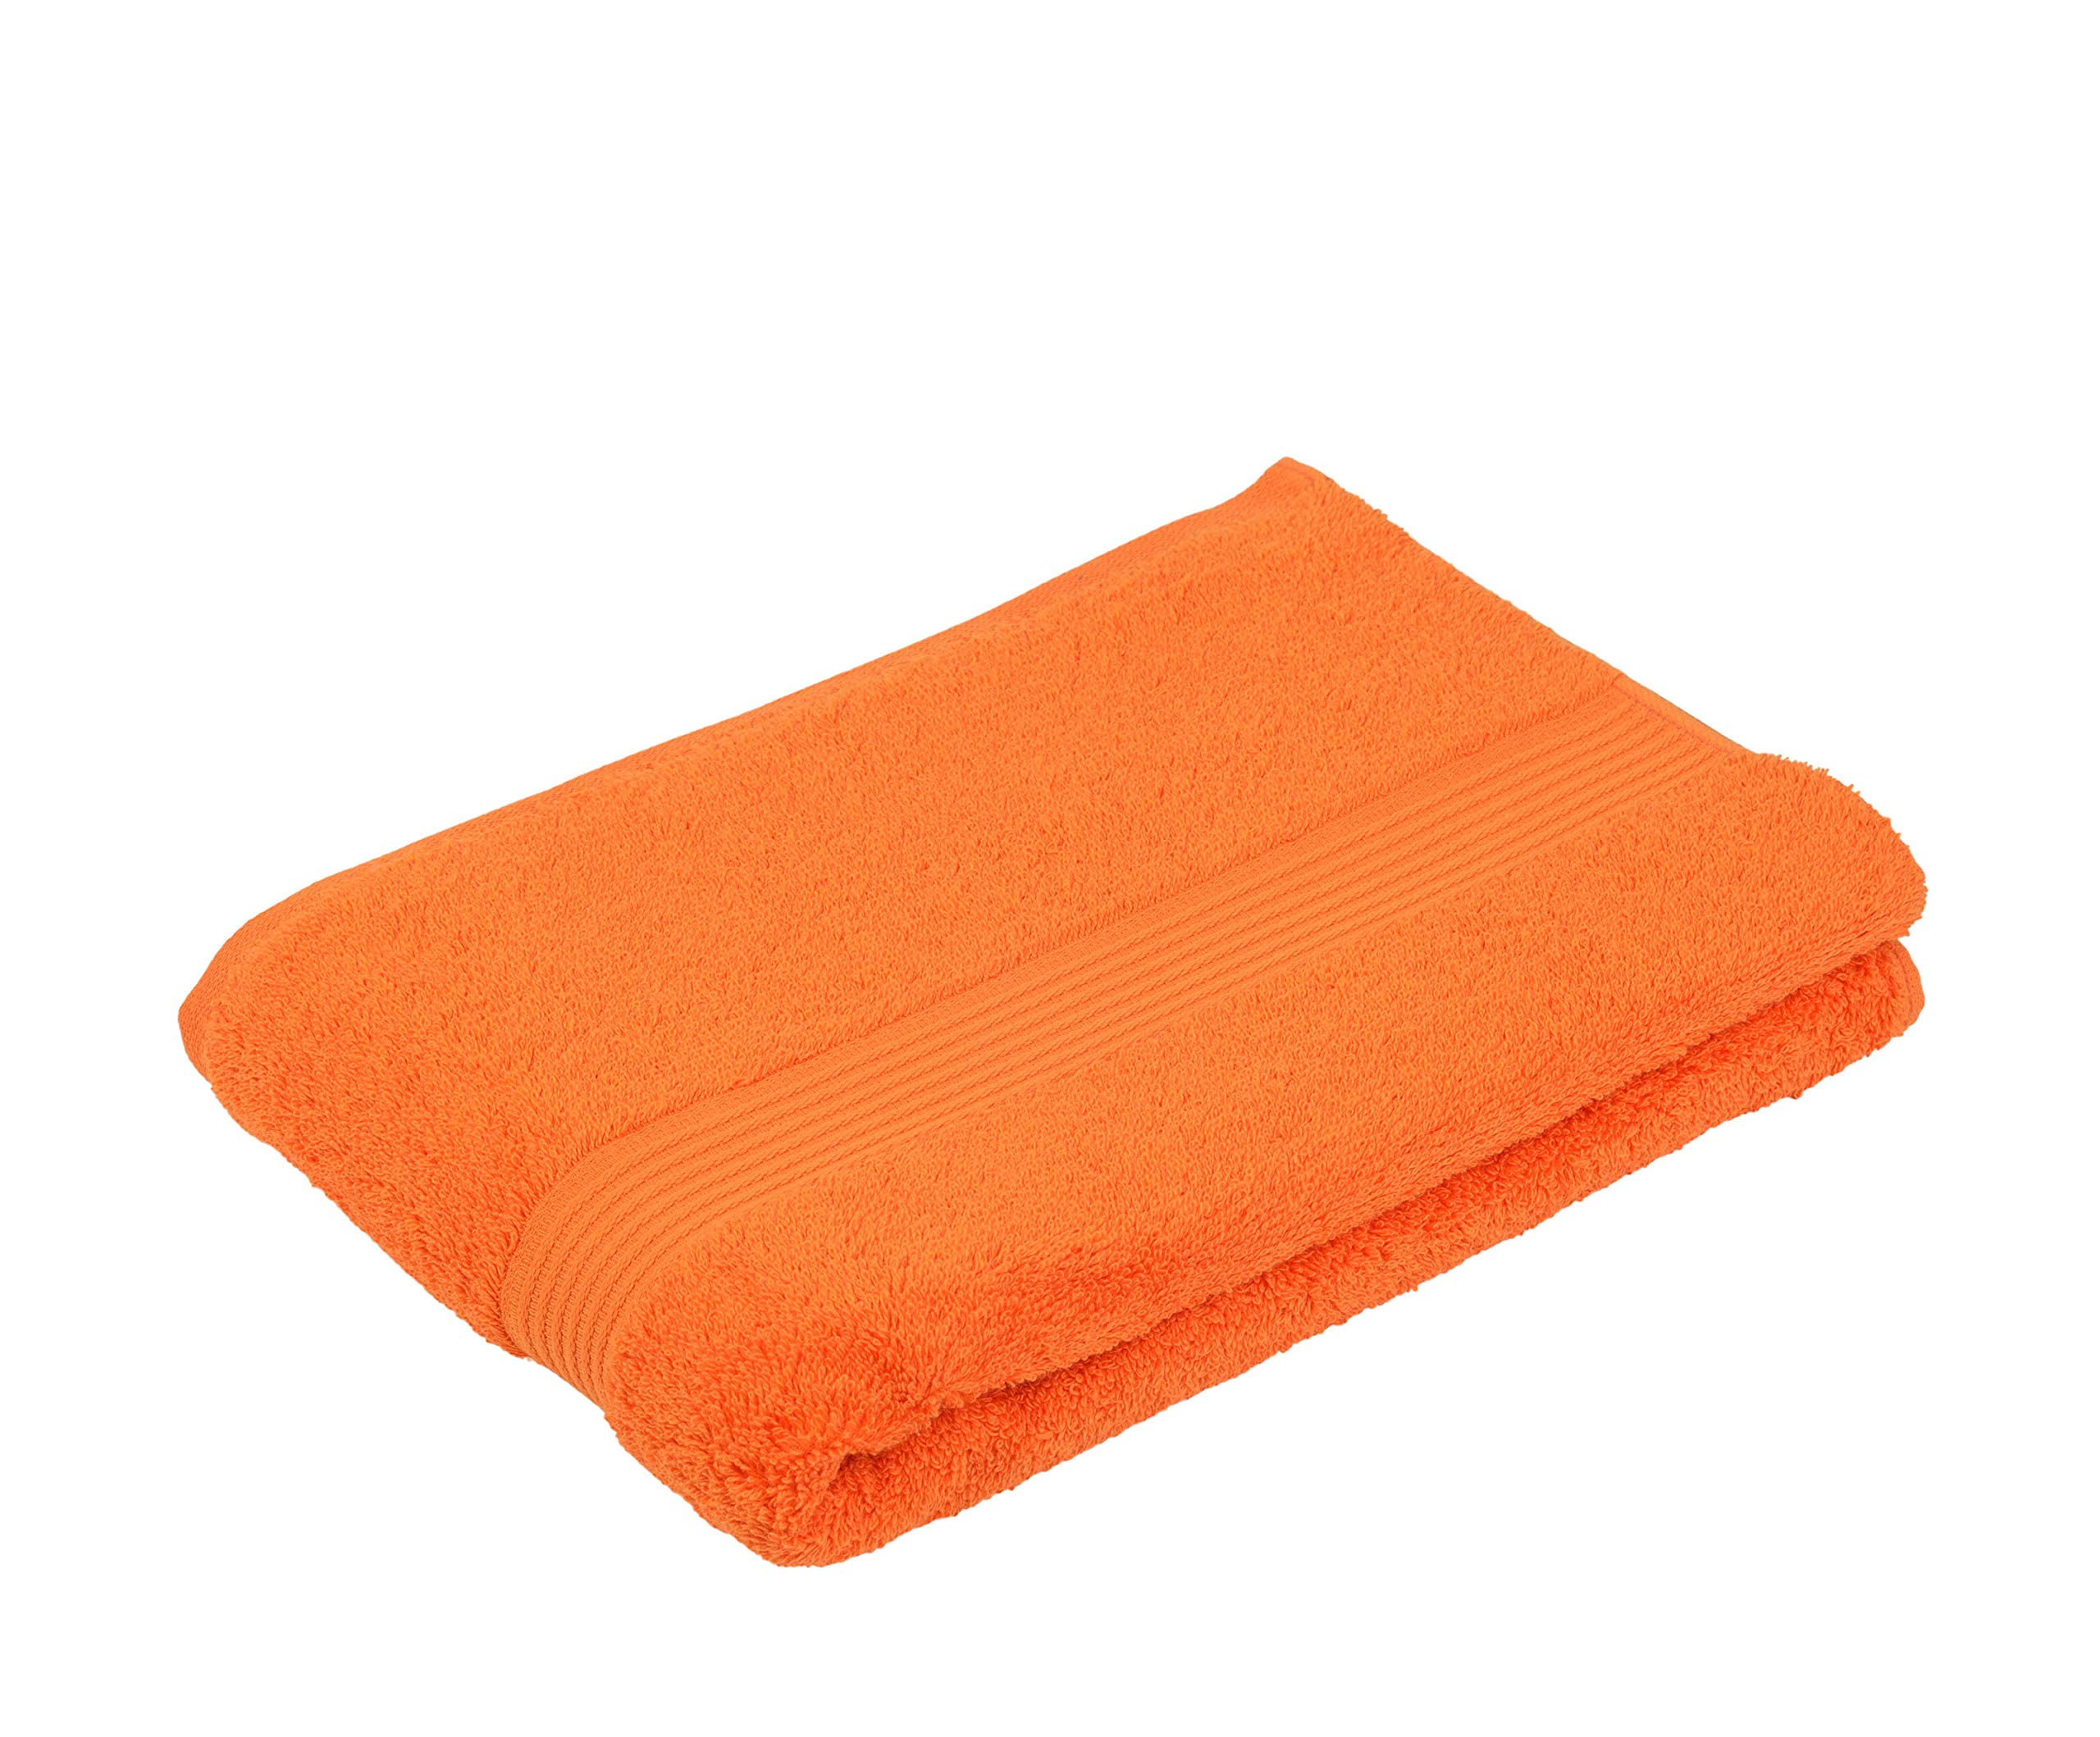 Gözze - New York Duschtuch, 1er Set, Weiches und saugfähiges Handtuch, 100% Baumwolle, 70 x 140 cm, Orange, 550-0764-5